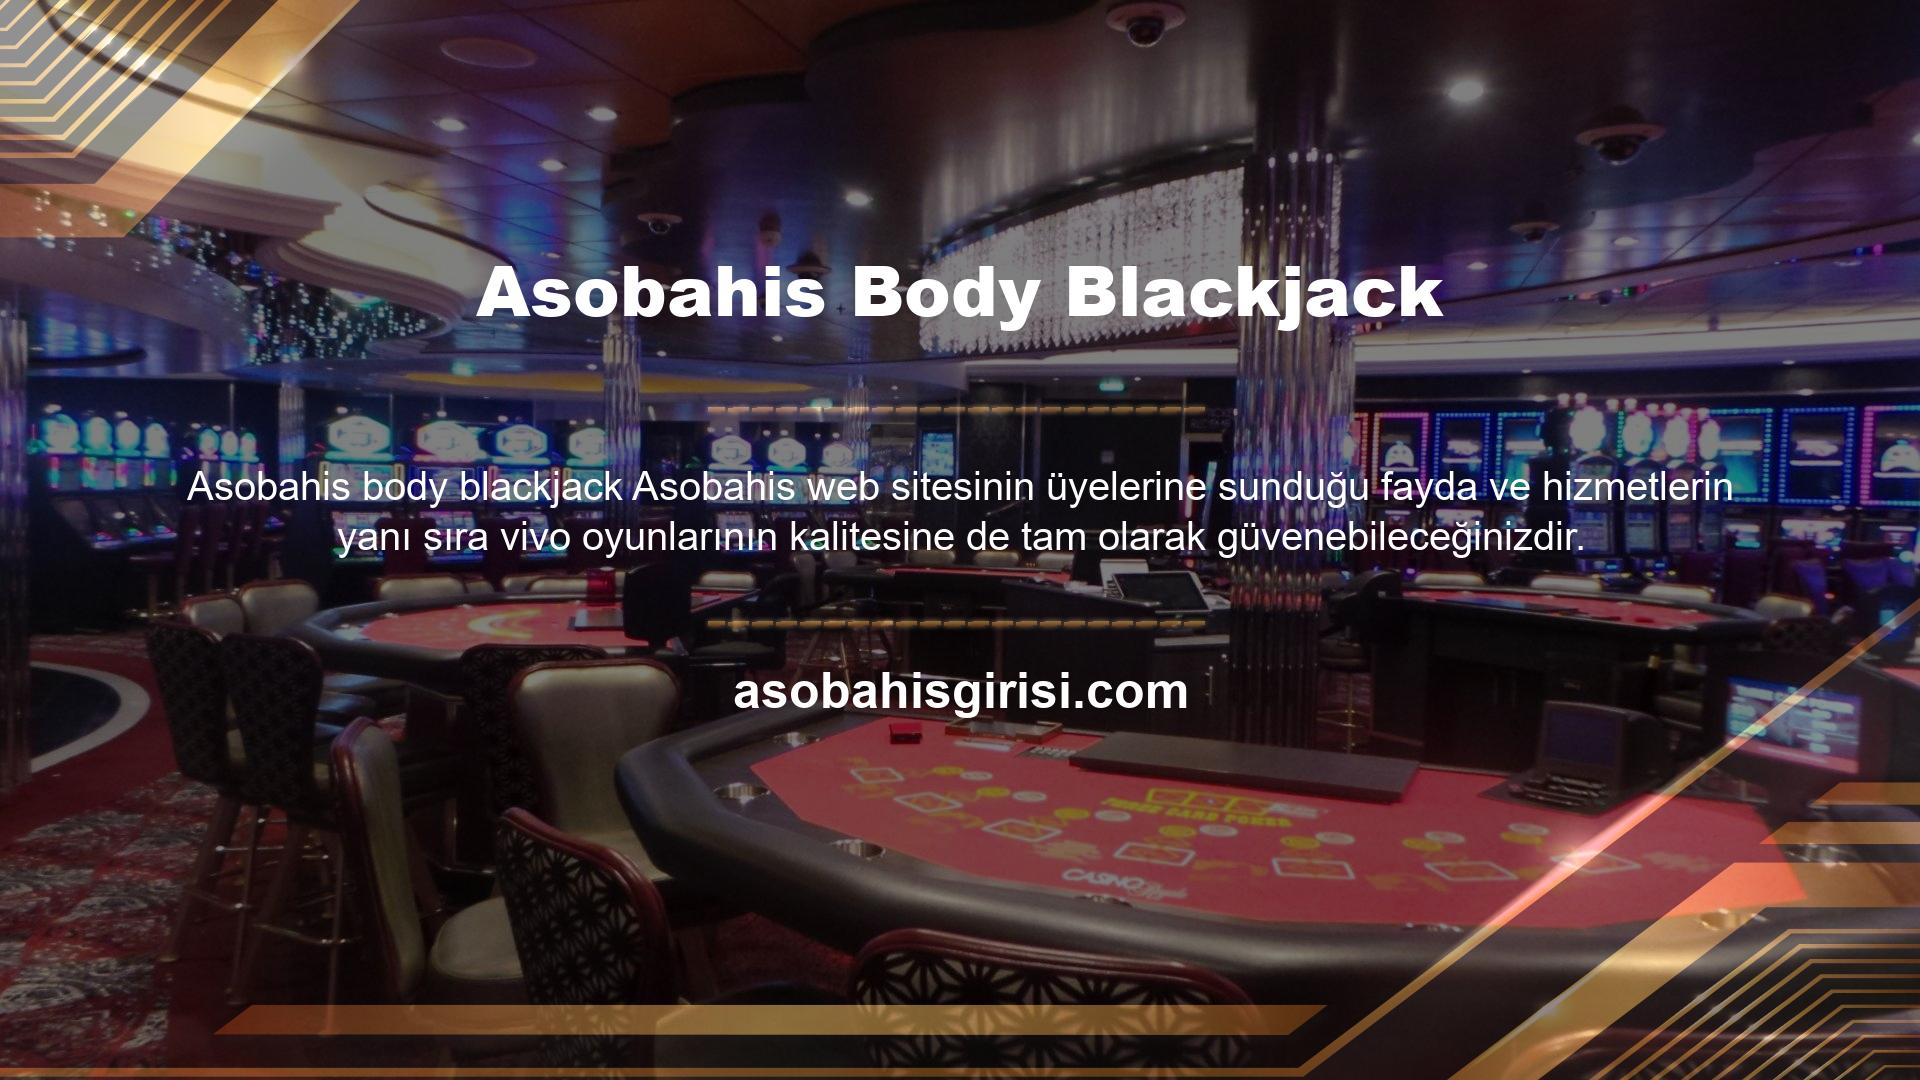 Asobahis vivo casinolar oyunları, casinolar tutkunlarının zengin oyun içeriğinin kesintisiz olarak keyfini çıkarmasına olanak tanır